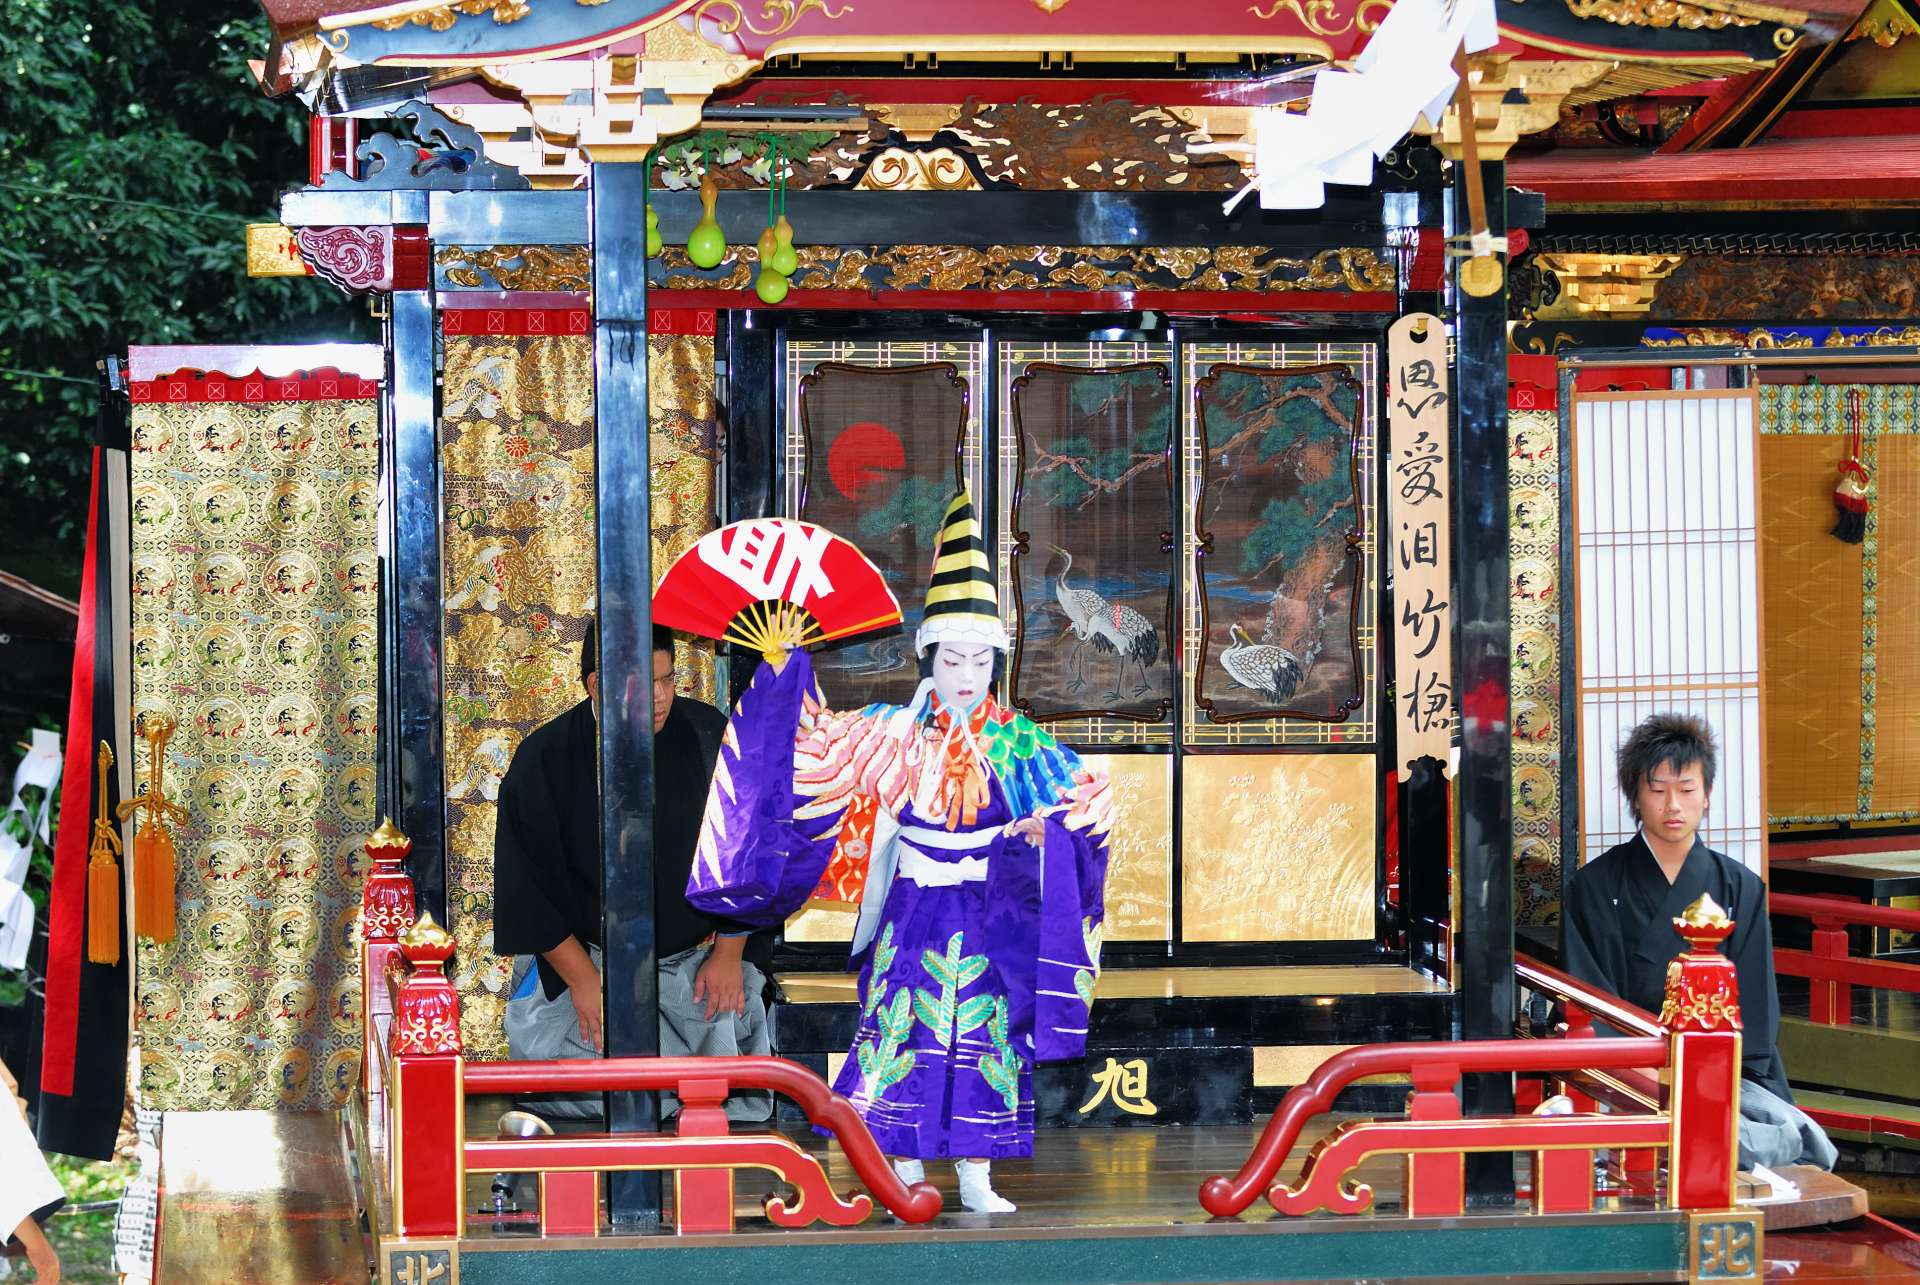 米原「曳山祭」の子ども歌舞伎。地元の5歳から12歳の男の子たちの名演が繰り広げられる。